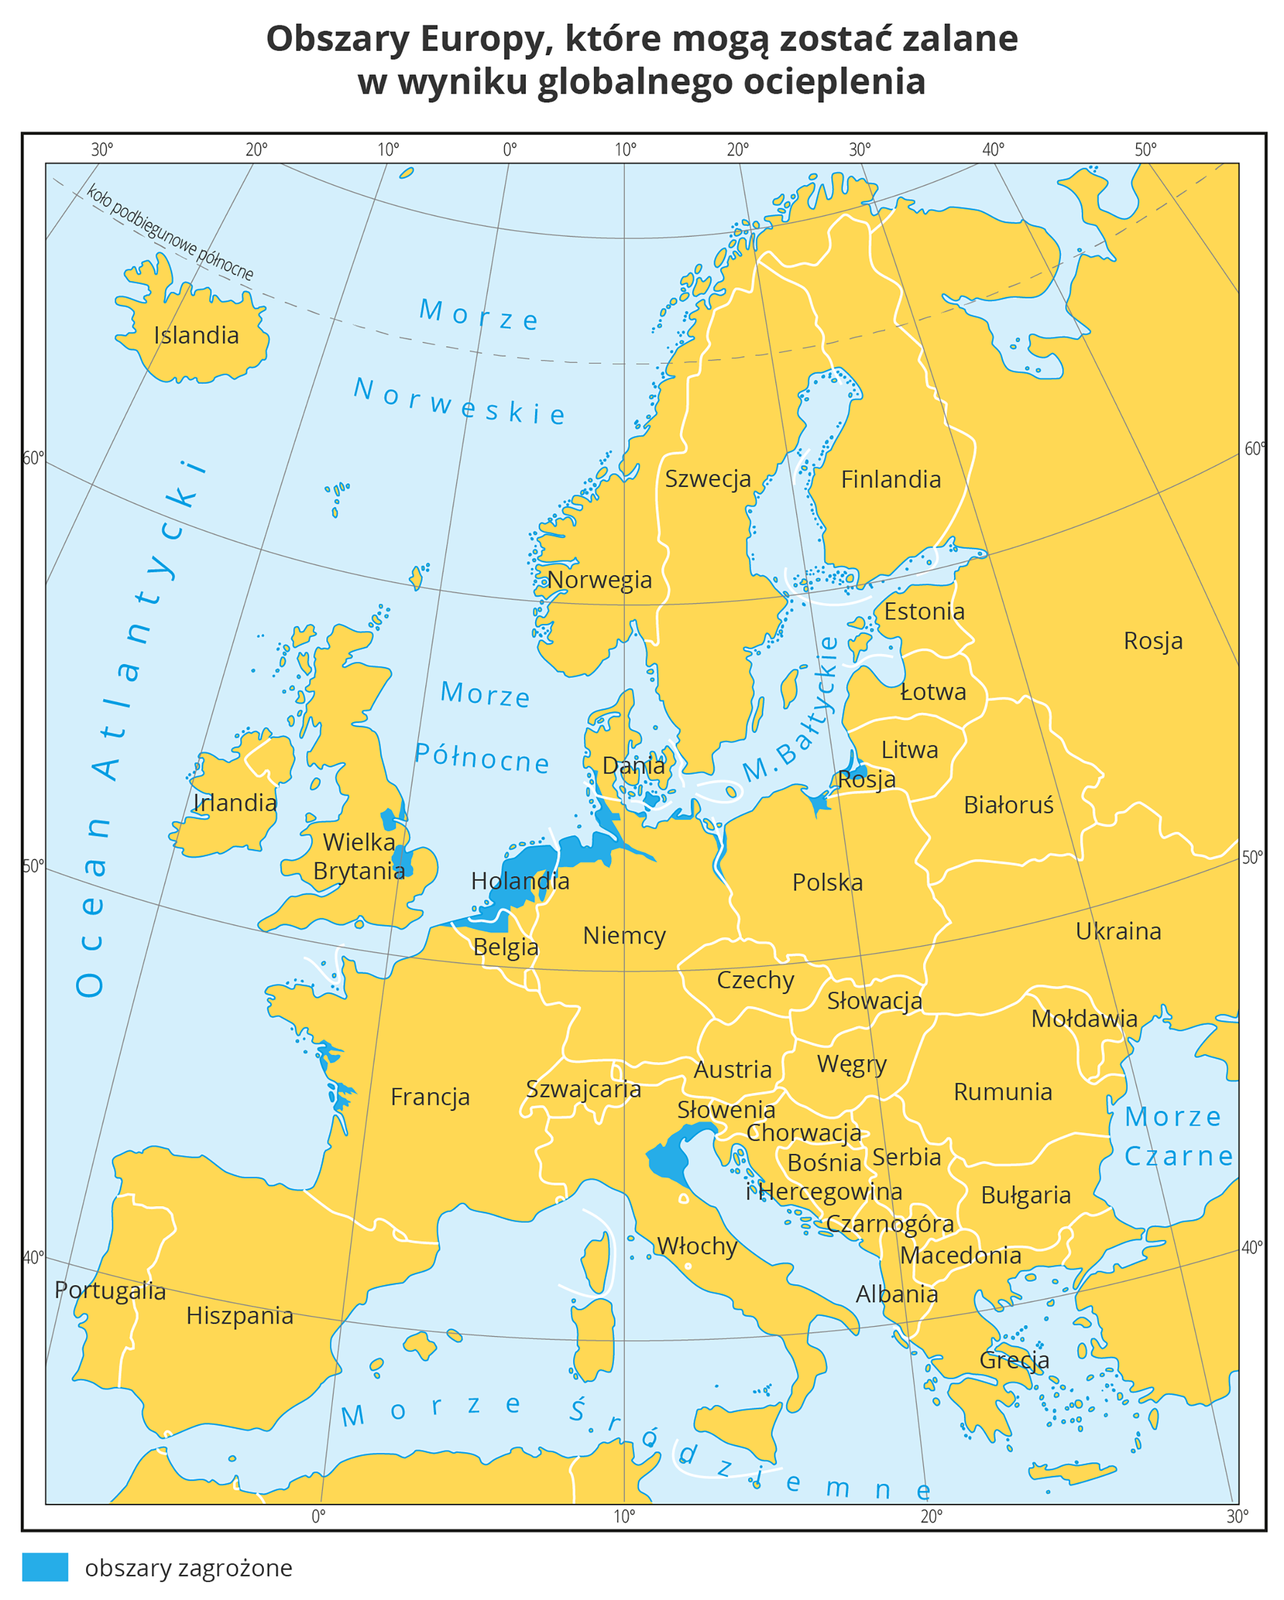 Mapa przedstawia kraje Europy w kolorze żółtym. Na północnych wybrzeżach Rosji, Polski, Niemiec, Holandii, zachodnich Wielkiej Brytanii, wschodnich Francji i południowych wybrzeżach Włoch i Słowenii na niebiesko zaznaczono obszary, które mogą zostać zalane w wyniku globalnego ocieplenia.